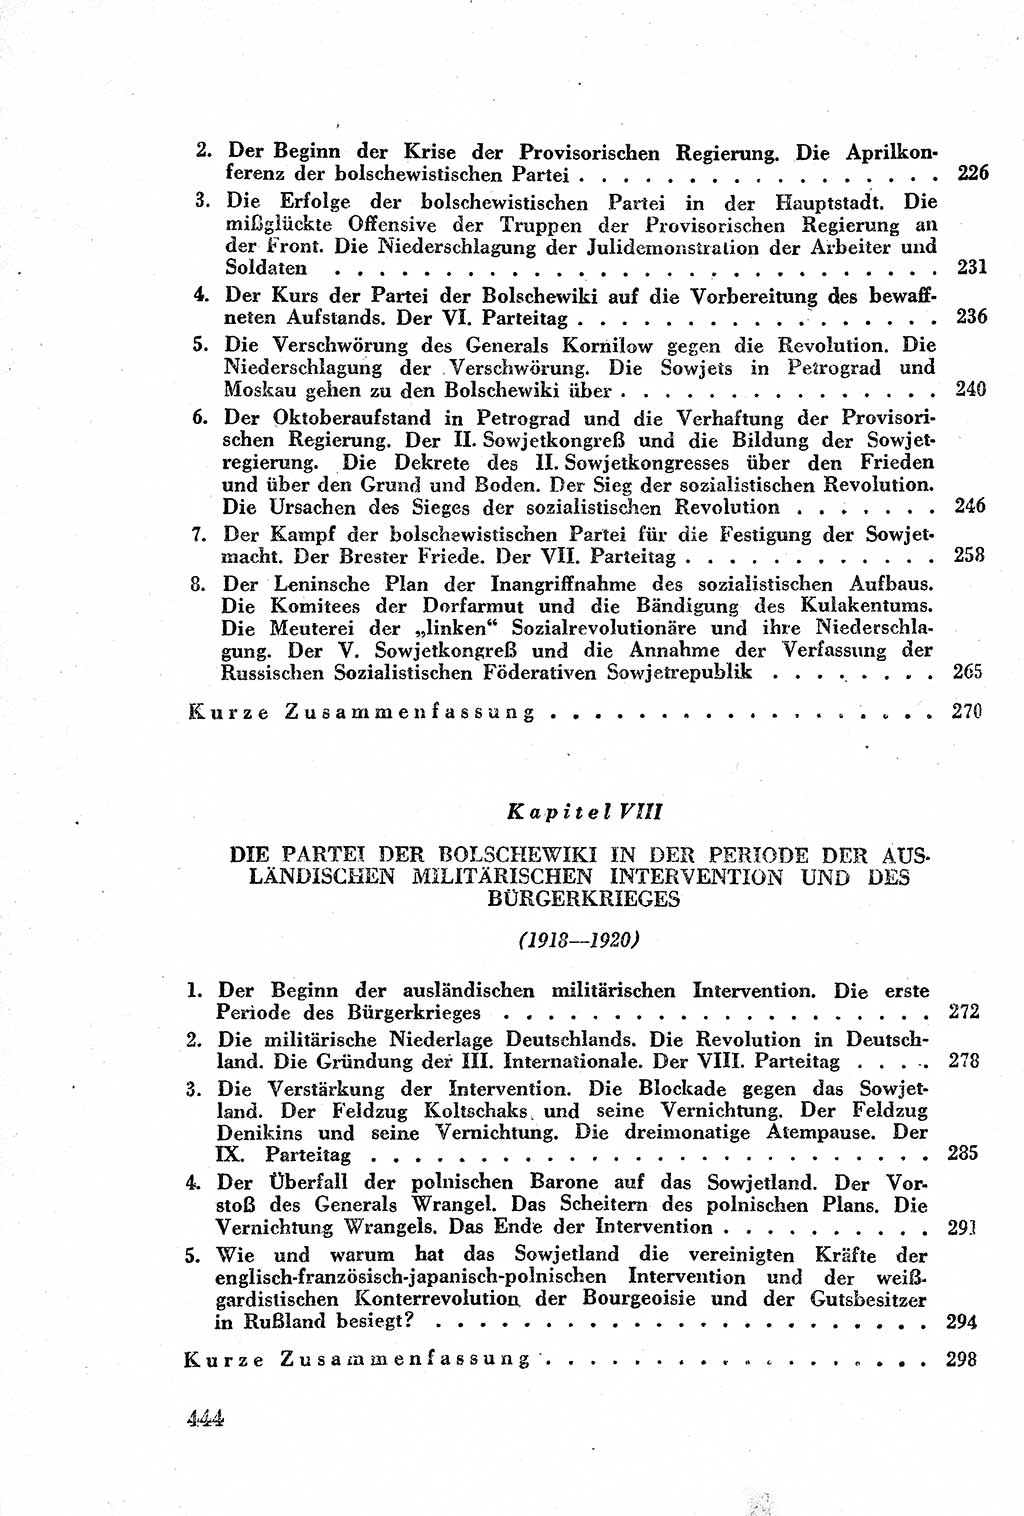 Geschichte der Kommunistischen Partei der Sowjetunion (KPdSU) [Sowjetische Besatzungszone (SBZ) Deutschlands] 1946, Seite 444 (Gesch. KPdSU SBZ Dtl. 1946, S. 444)